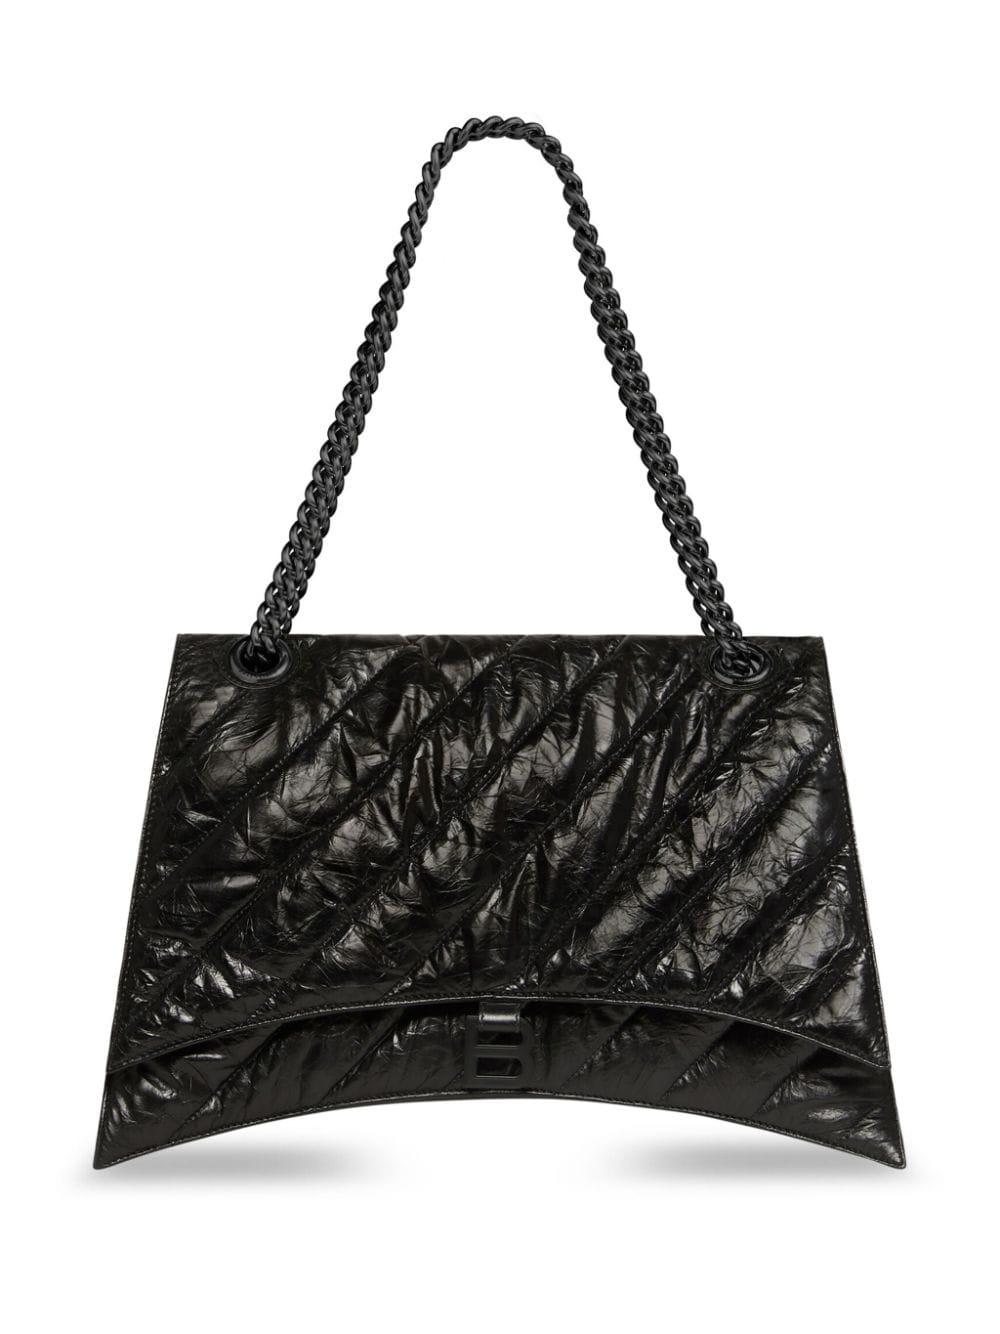 حقيبة يد كبيرة من جلد العجل المبطن بمقبض سلسلة وشعار معدني، لون أسود - 39.9x24.9x12.9 سم